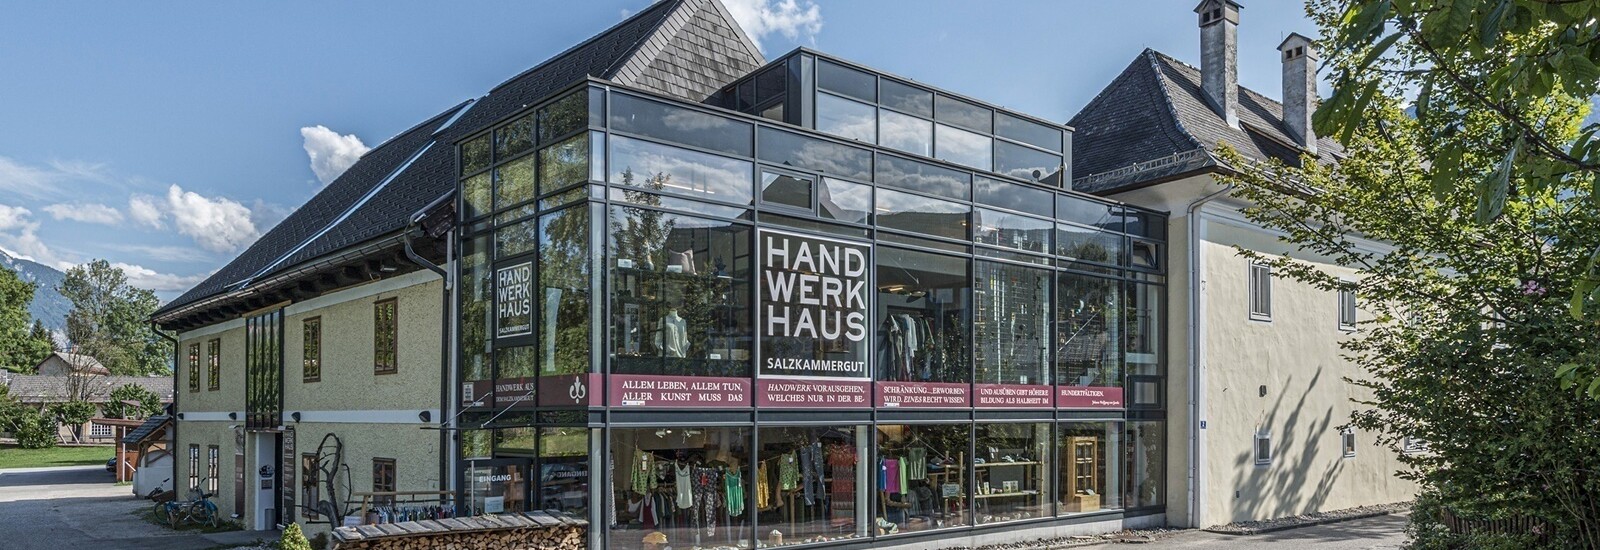 ハンドペイント ガラス 蓋もの オーストリア ザルツブルグ - 工芸品